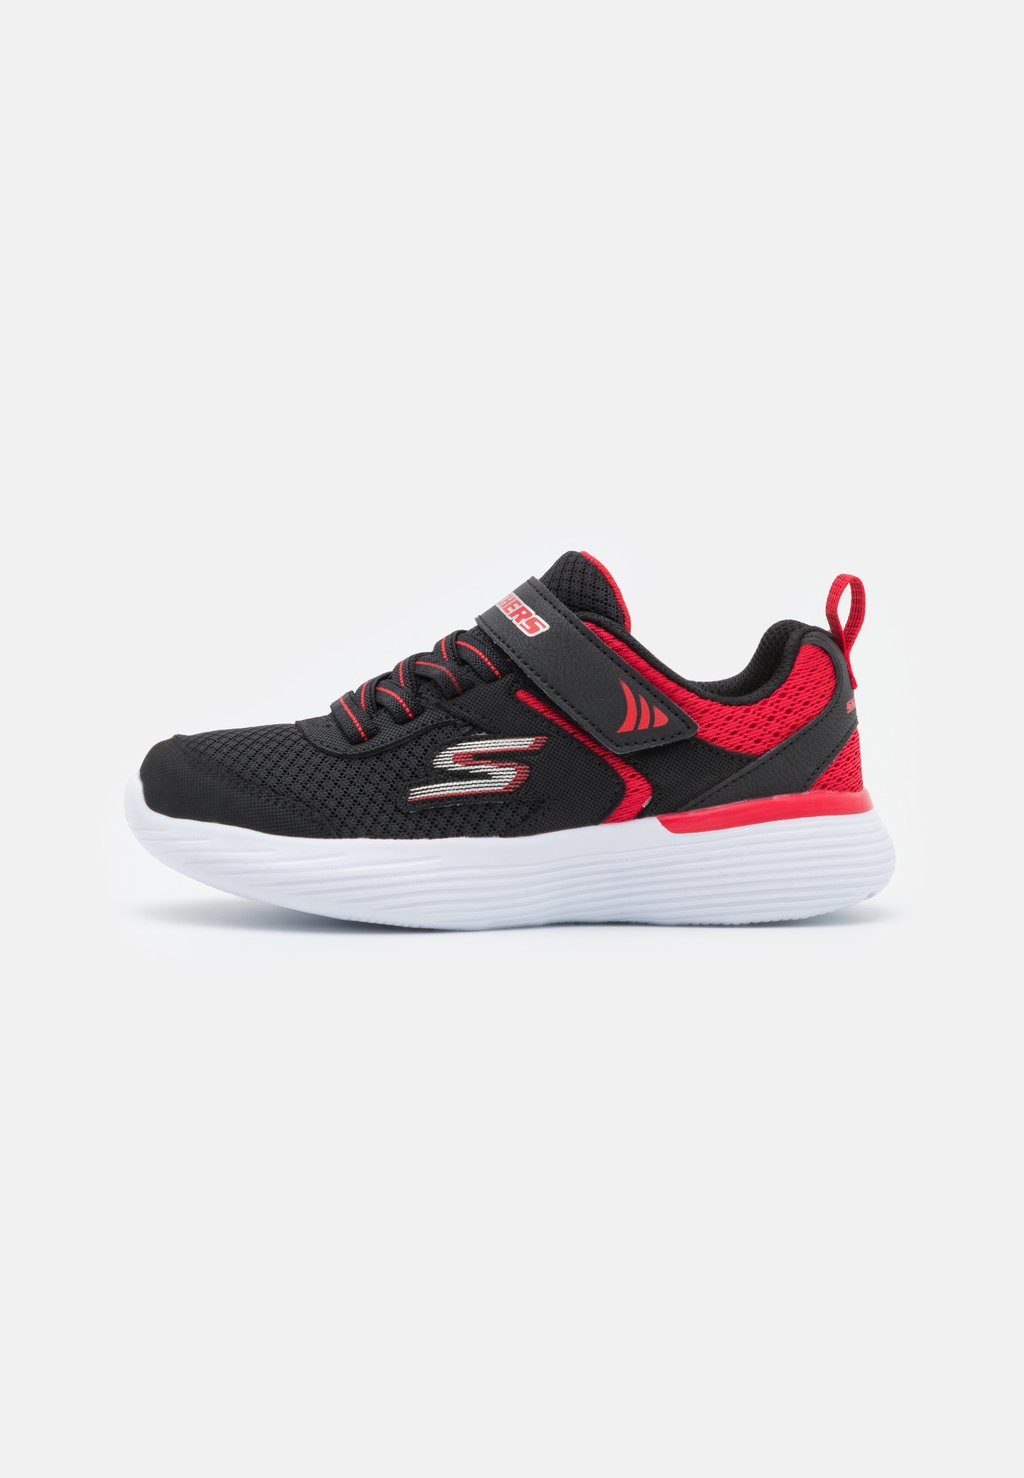 Кроссовки нейтрального цвета GO RUN 400 V2 UNISEX Skechers Performance, цвет black/red